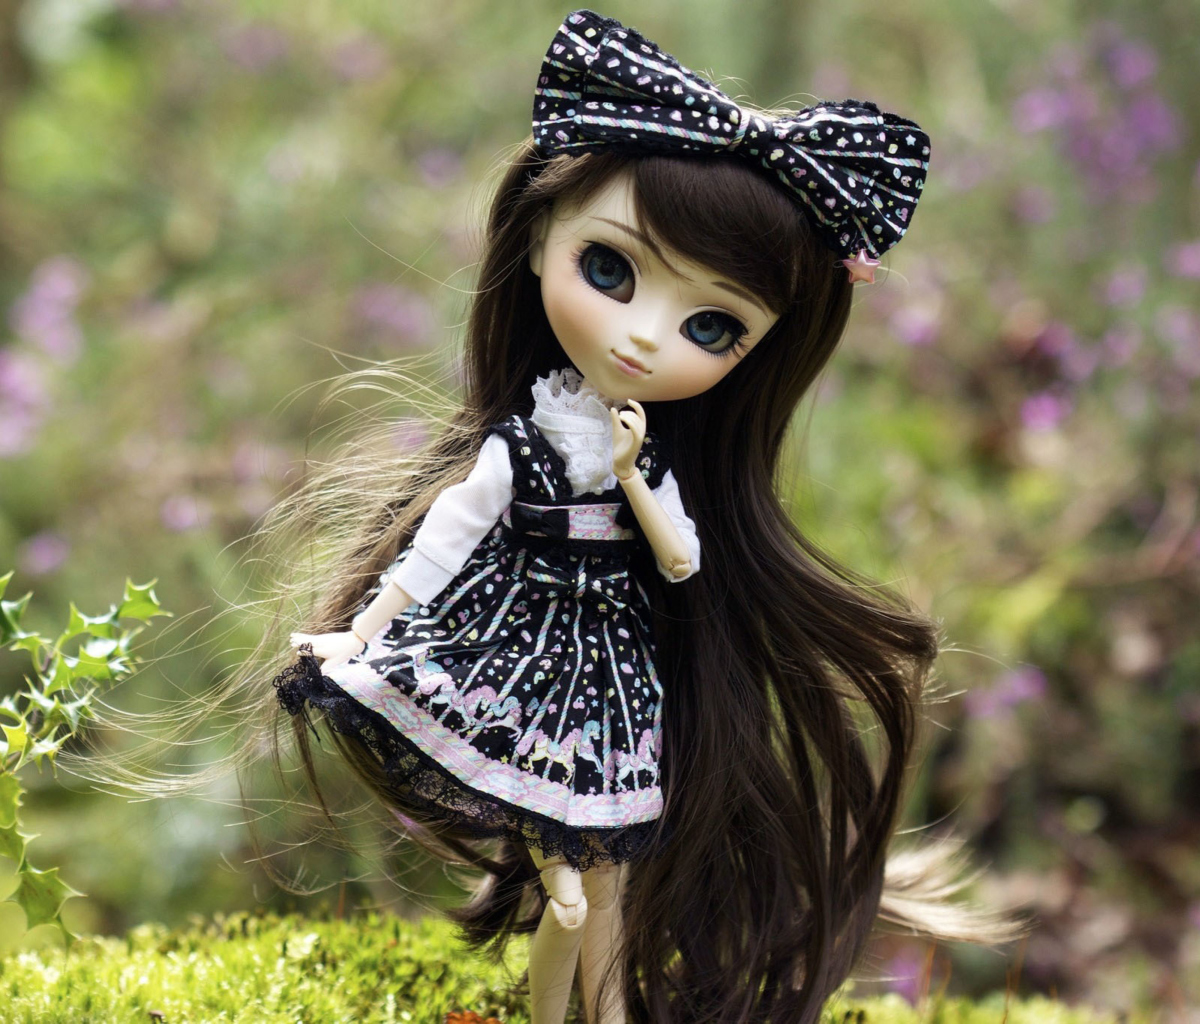 Обои Cute Doll With Dark Hair And Black Bow 1200x1024